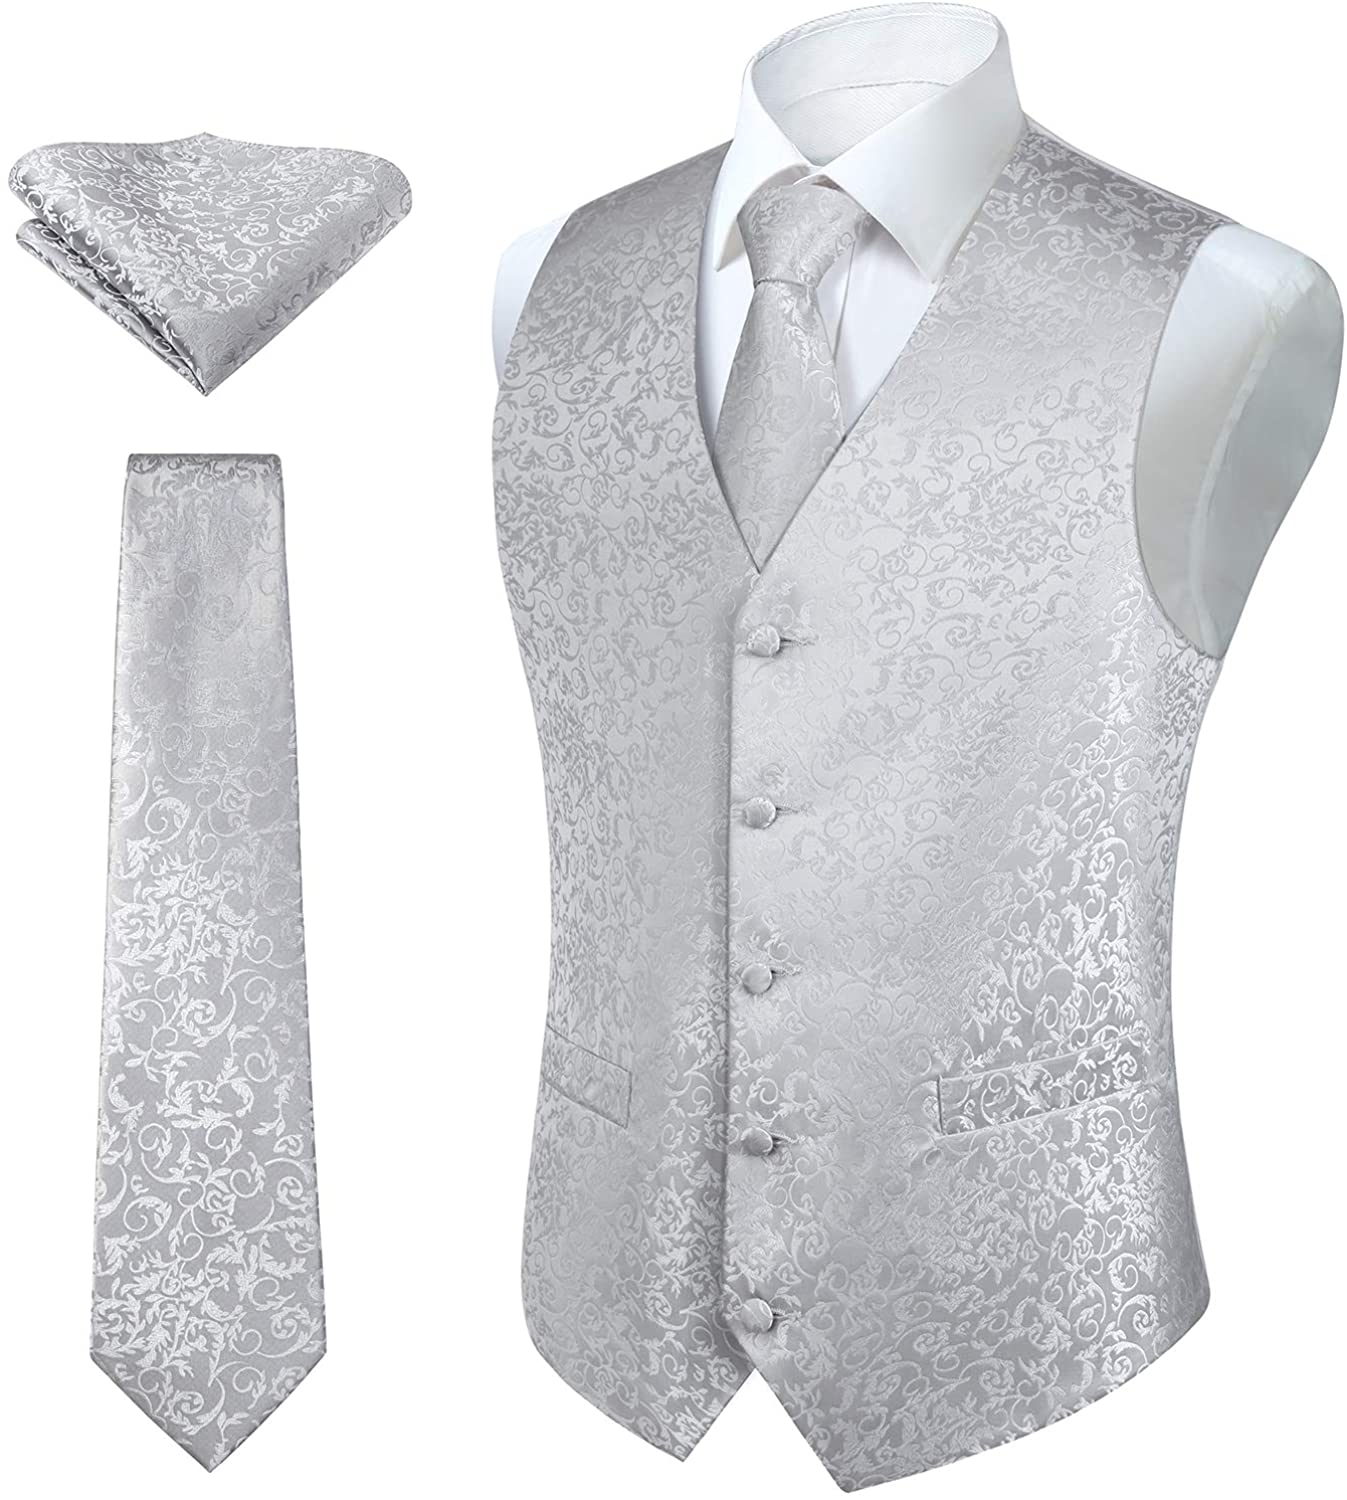 HISDERN Men's Classic Solid Color Jacquard Waistcoat & Necktie and Pocket Square Vest Suit Set